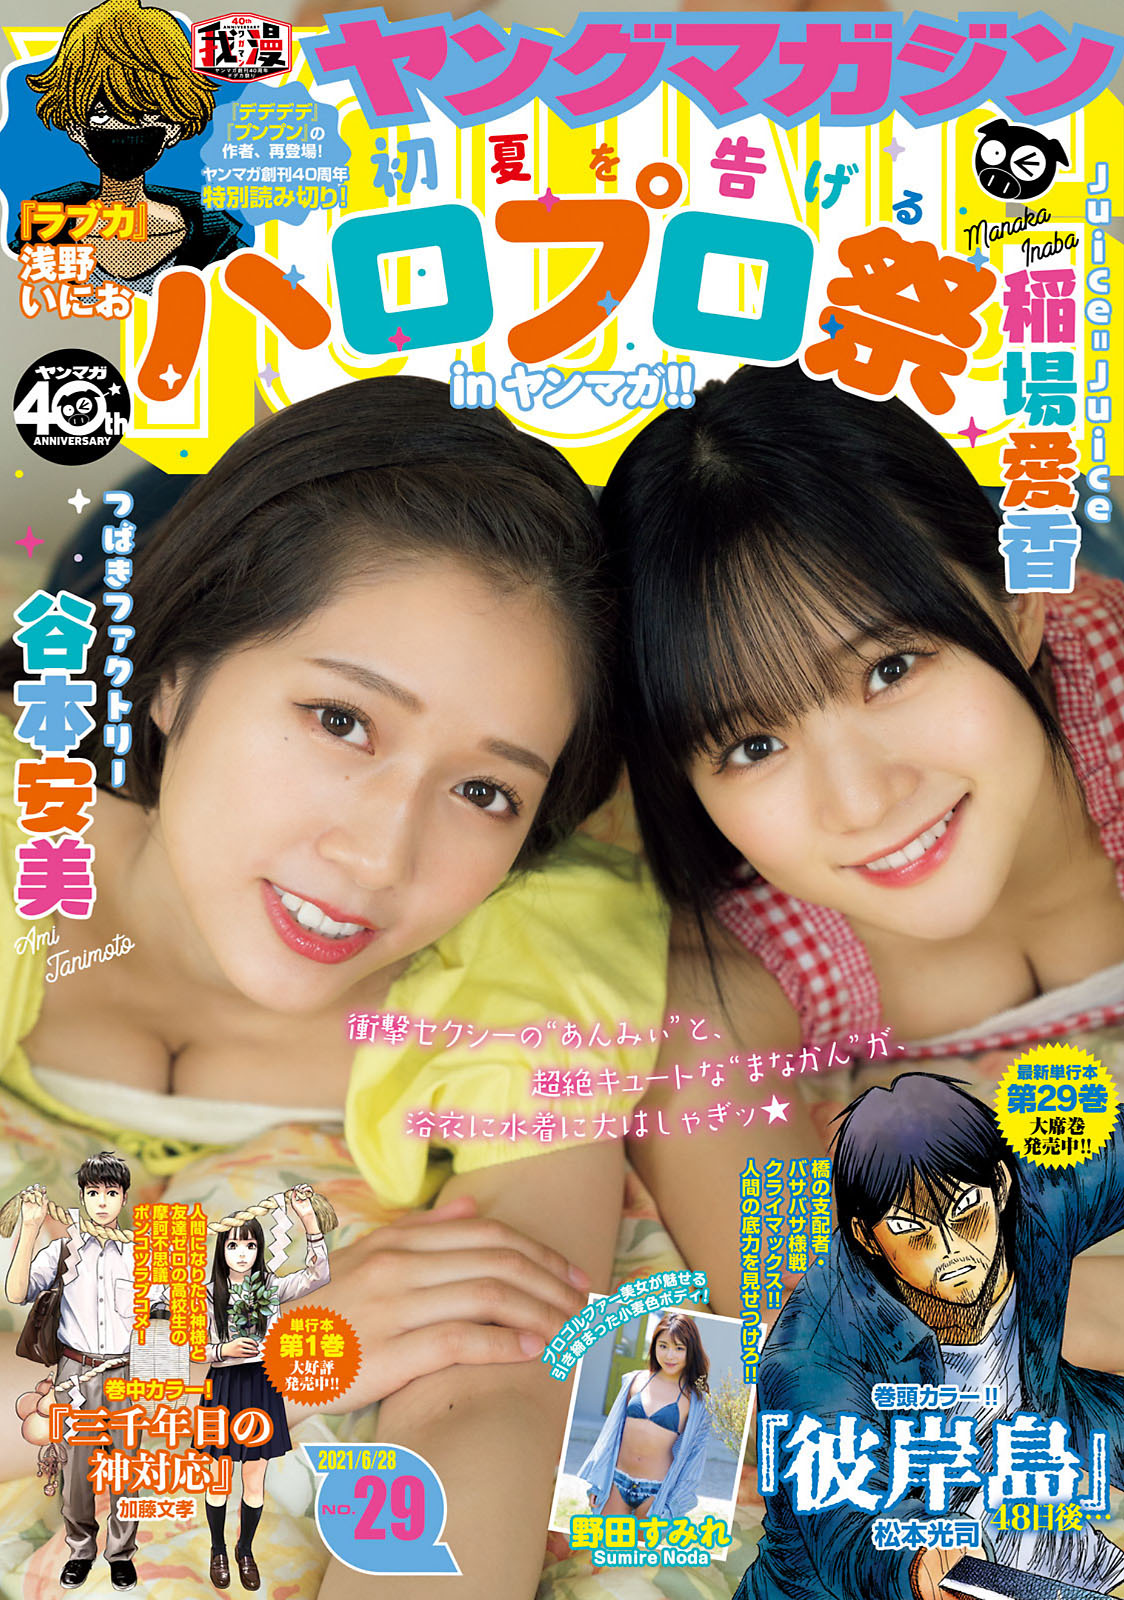 稲場愛香 & 谷本安美, Young Magazine 2021 No.29 (ヤングマガジン 2021年29号)